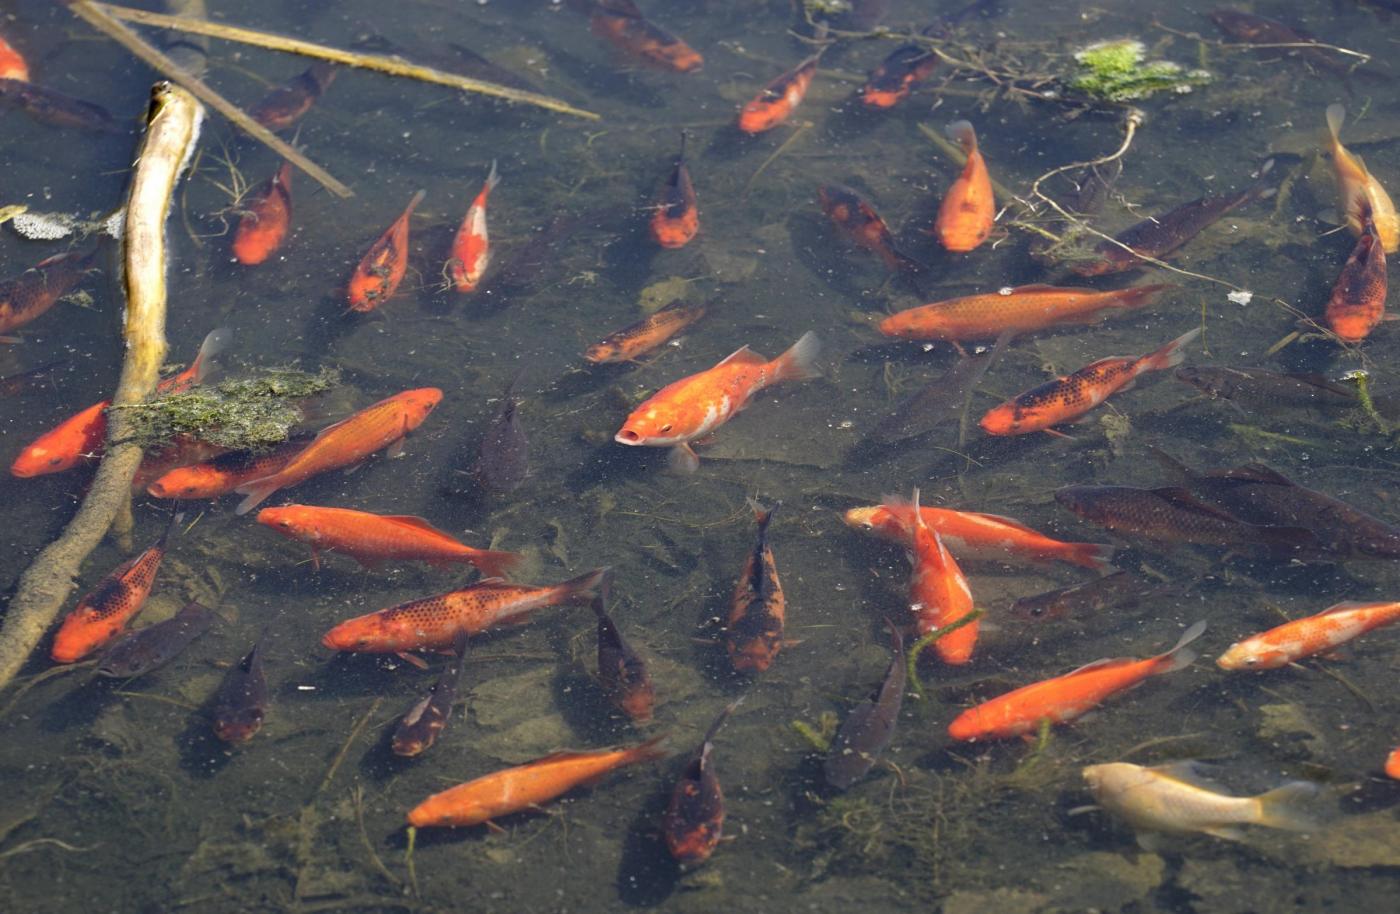 I pesci rossi gettati nei fiumi crescono e danneggiano l for Razze di pesci rossi